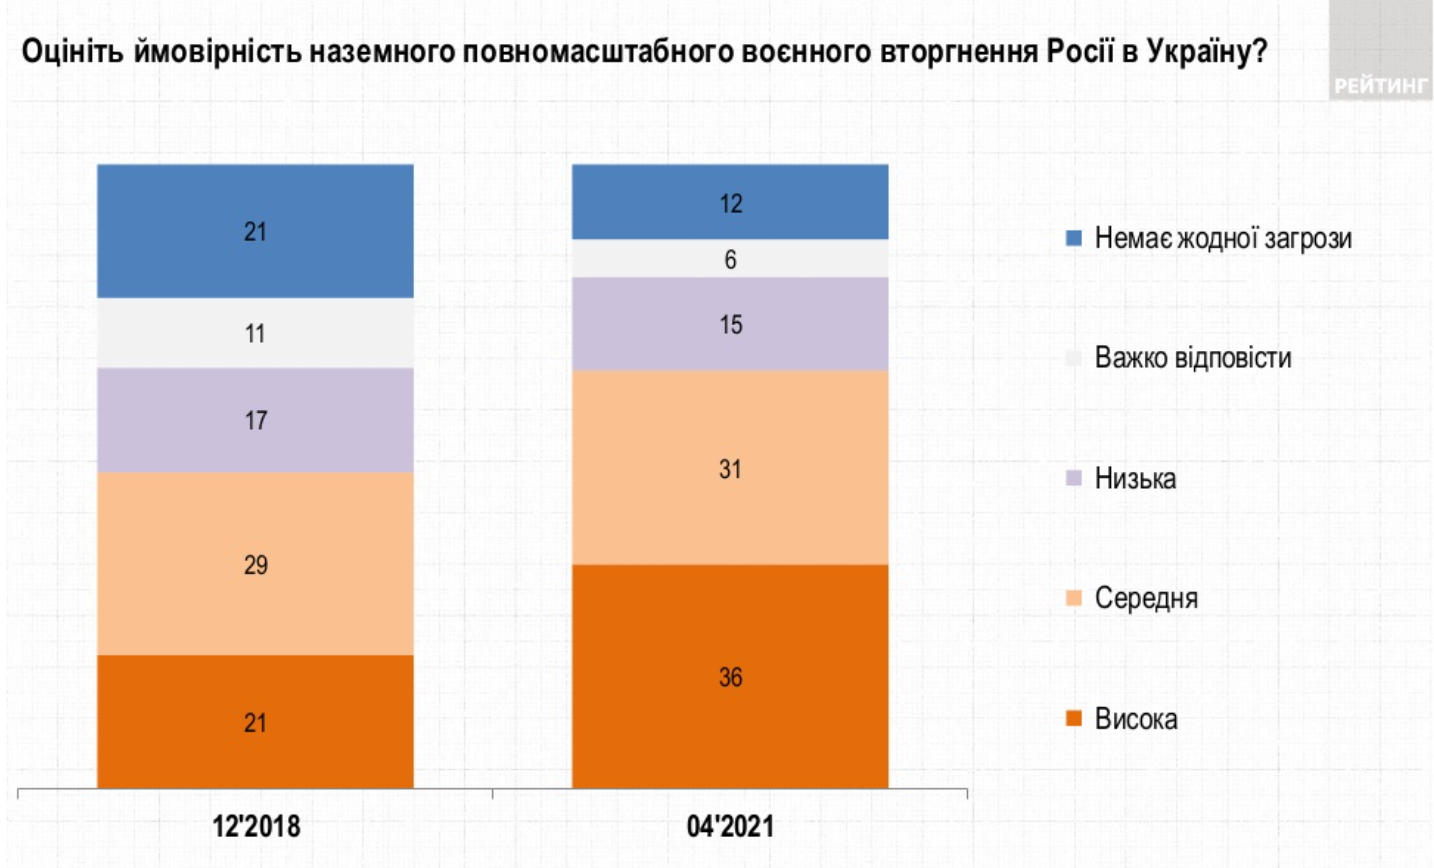 Как оценивают украинцы вероятность военного вторжения. Скриншот соцопроса группы Рейтинг